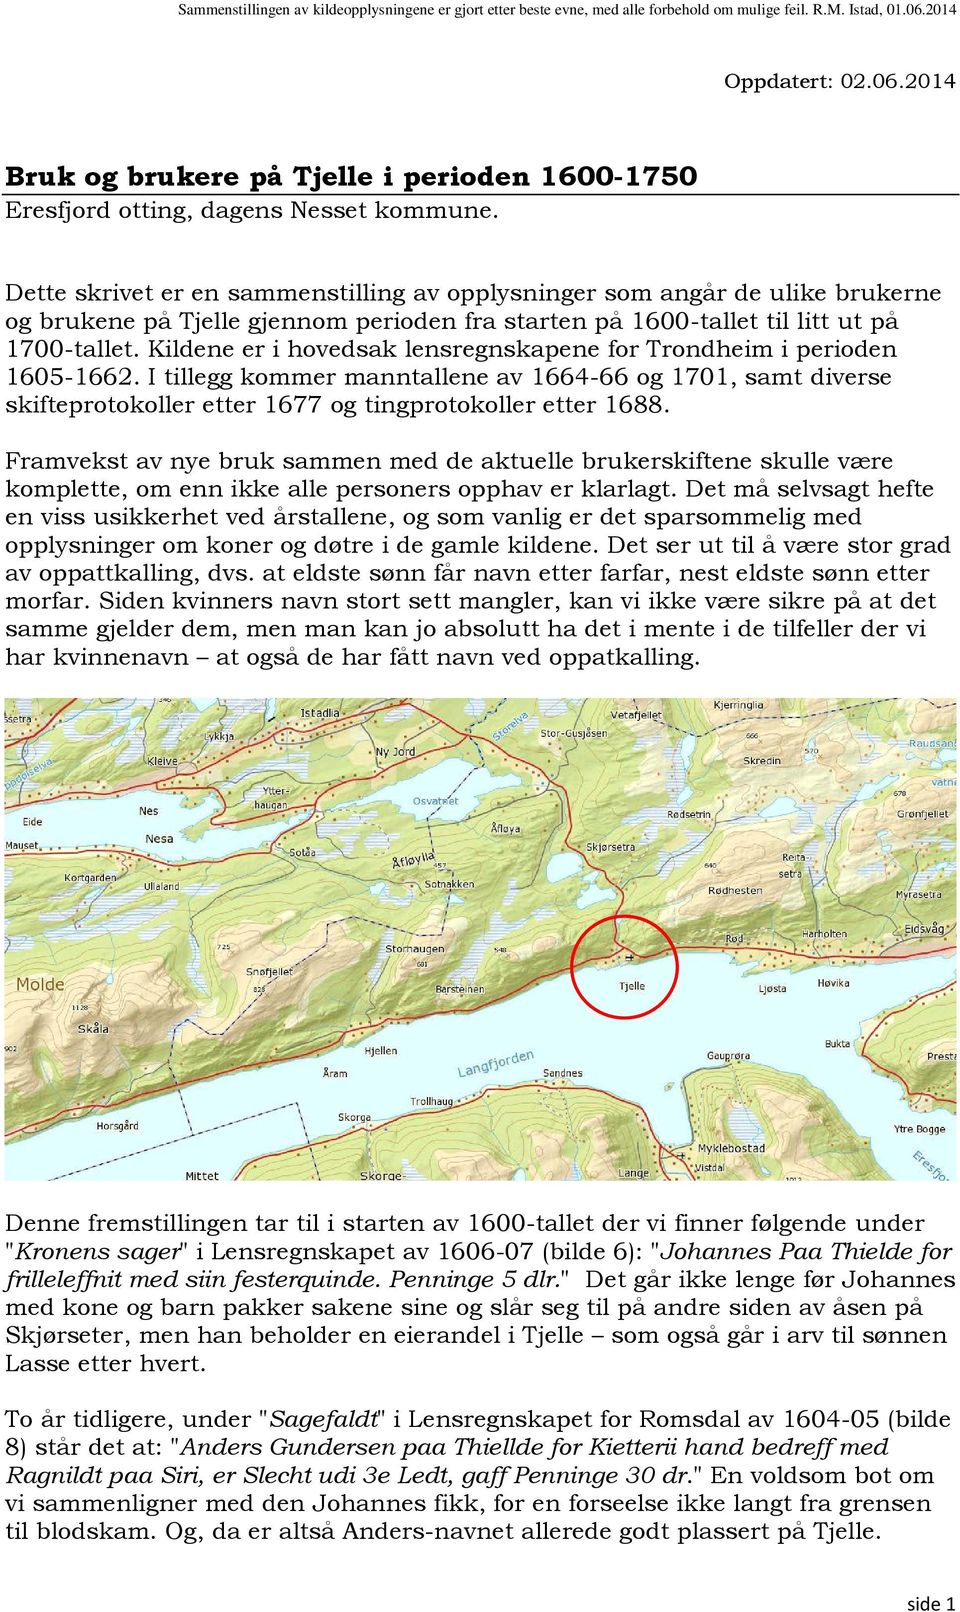 Kildene er i hovedsak lensregnskapene for Trondheim i perioden 1605-1662. I tillegg kommer manntallene av 1664-66 og 1701, samt diverse skifteprotokoller etter 1677 og tingprotokoller etter 1688.